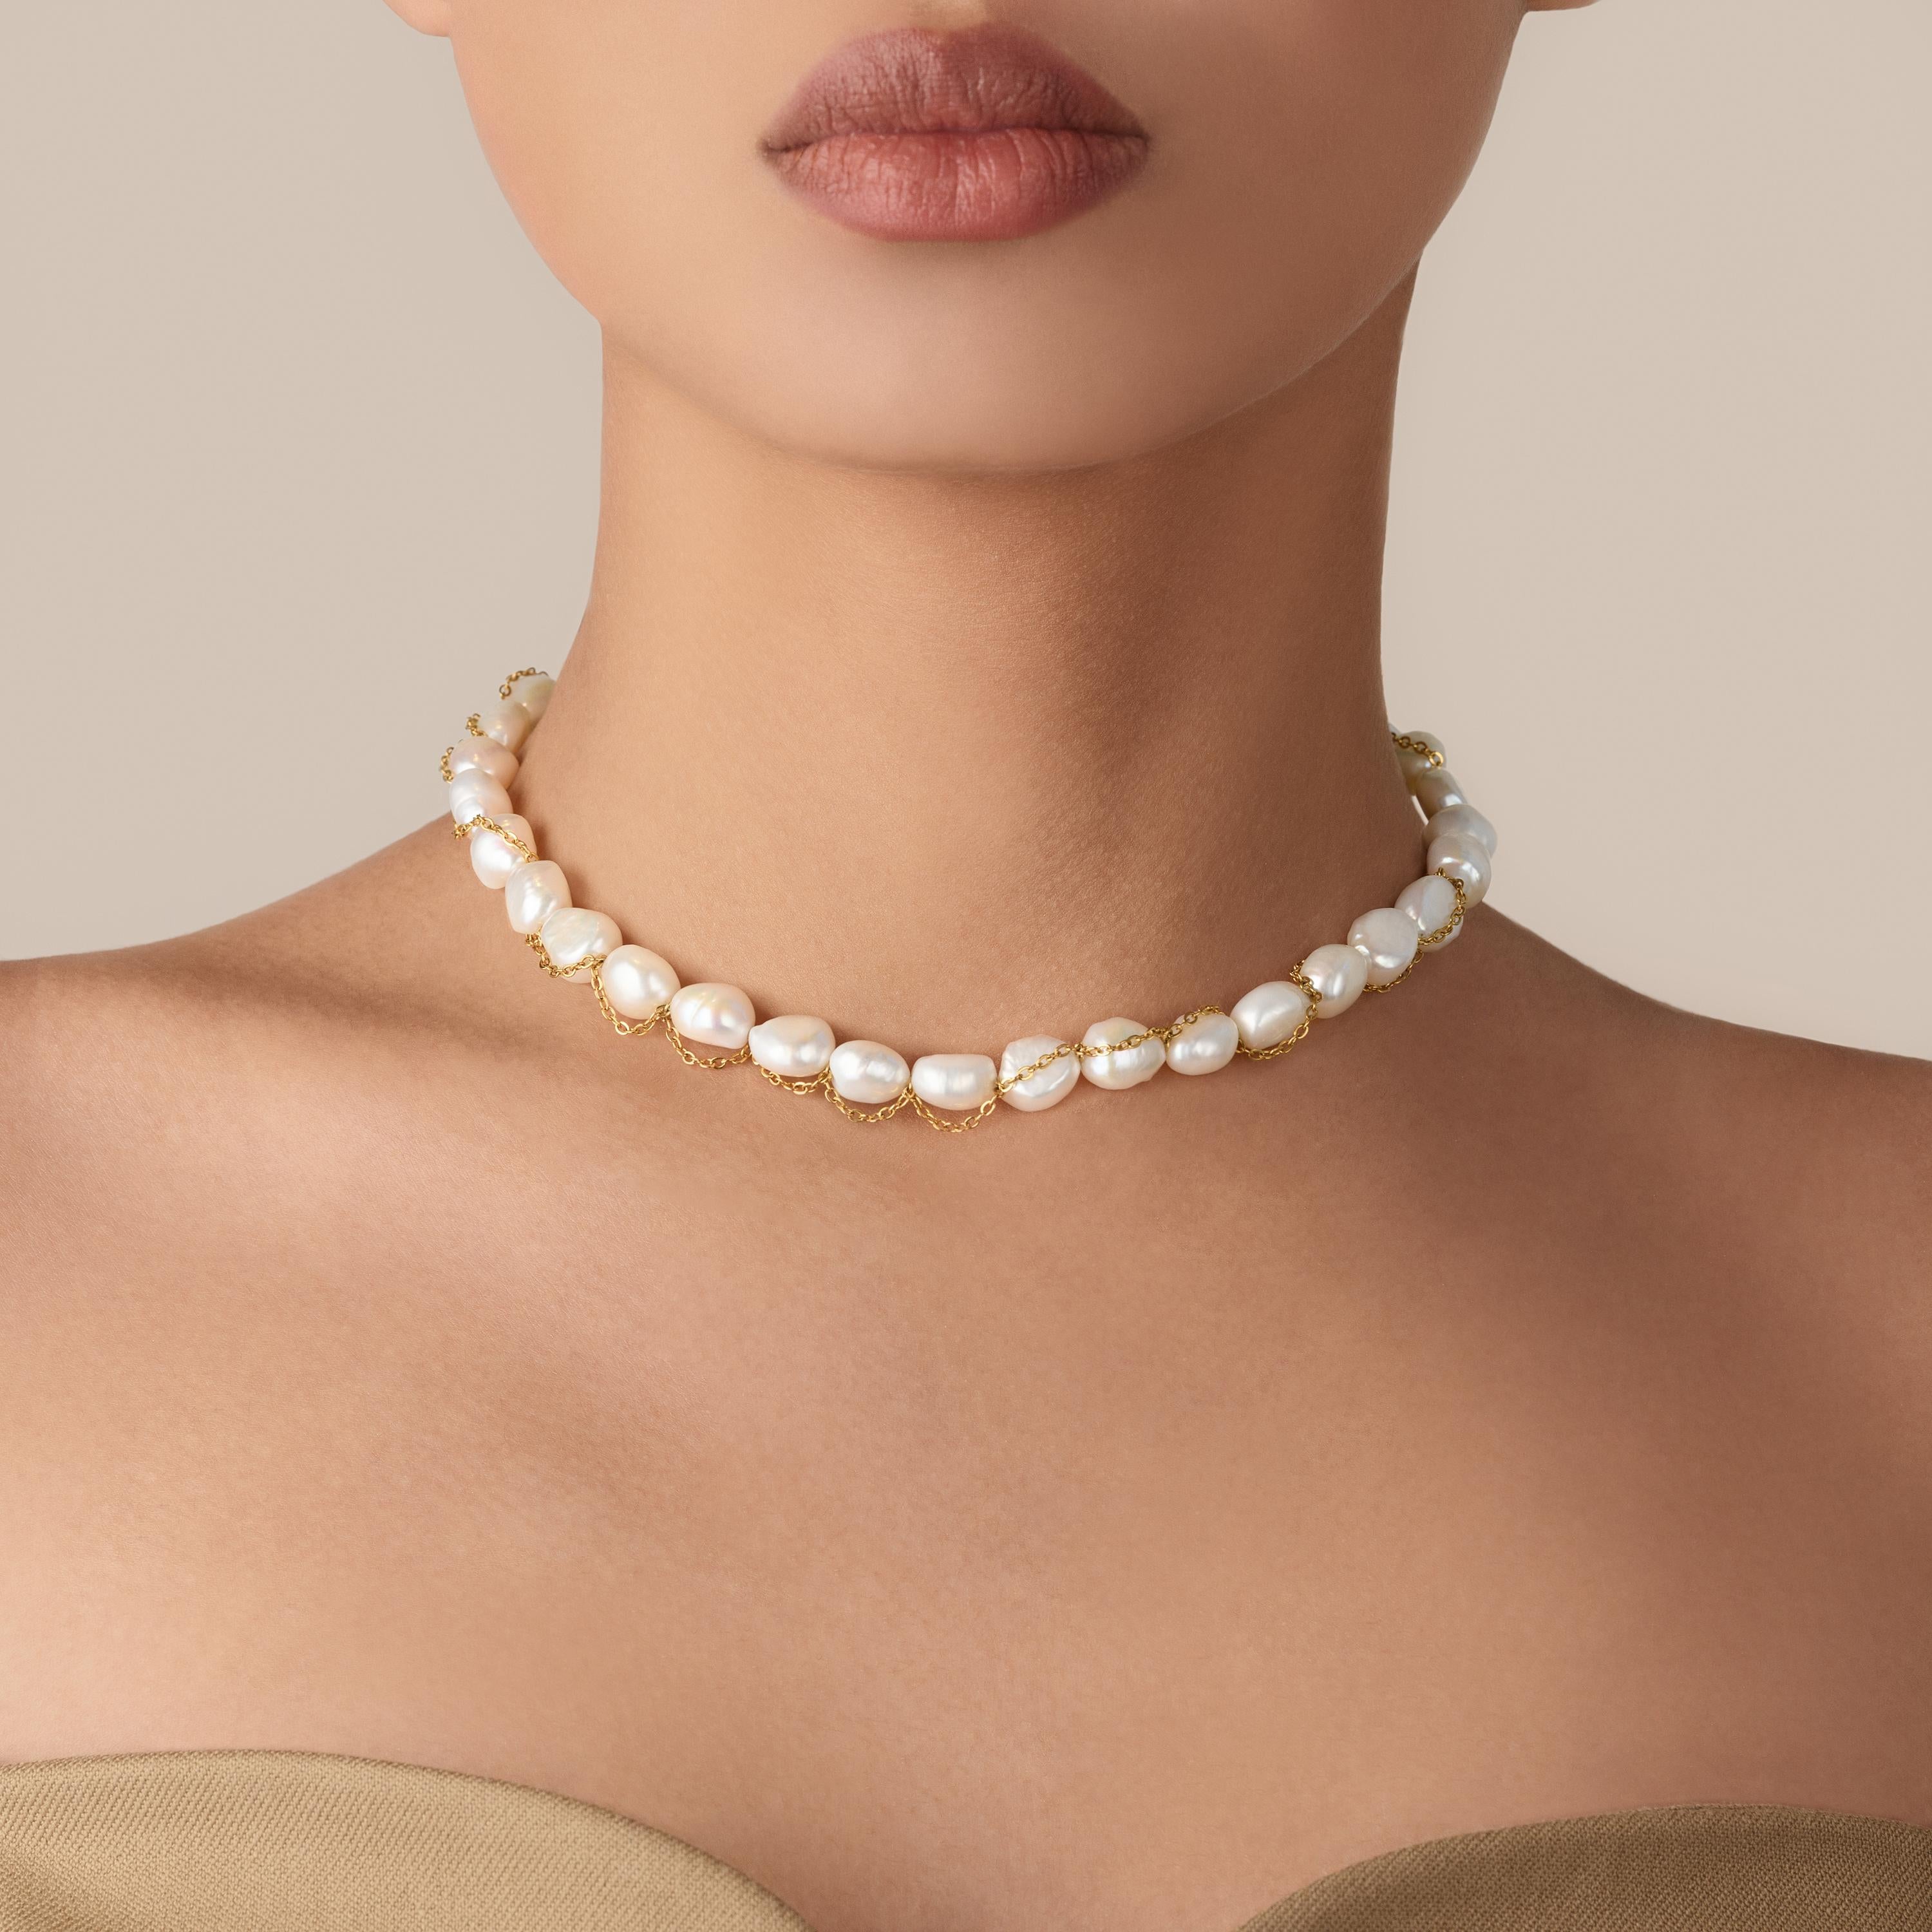 Laissez-vous séduire par la somptuosité de notre collier de perles baroques méticuleusement confectionné, véritable incarnation d'une sophistication raffinée. Cette pièce exquise associe l'attrait des perles baroques de 10-11 mm à l'opulence d'une